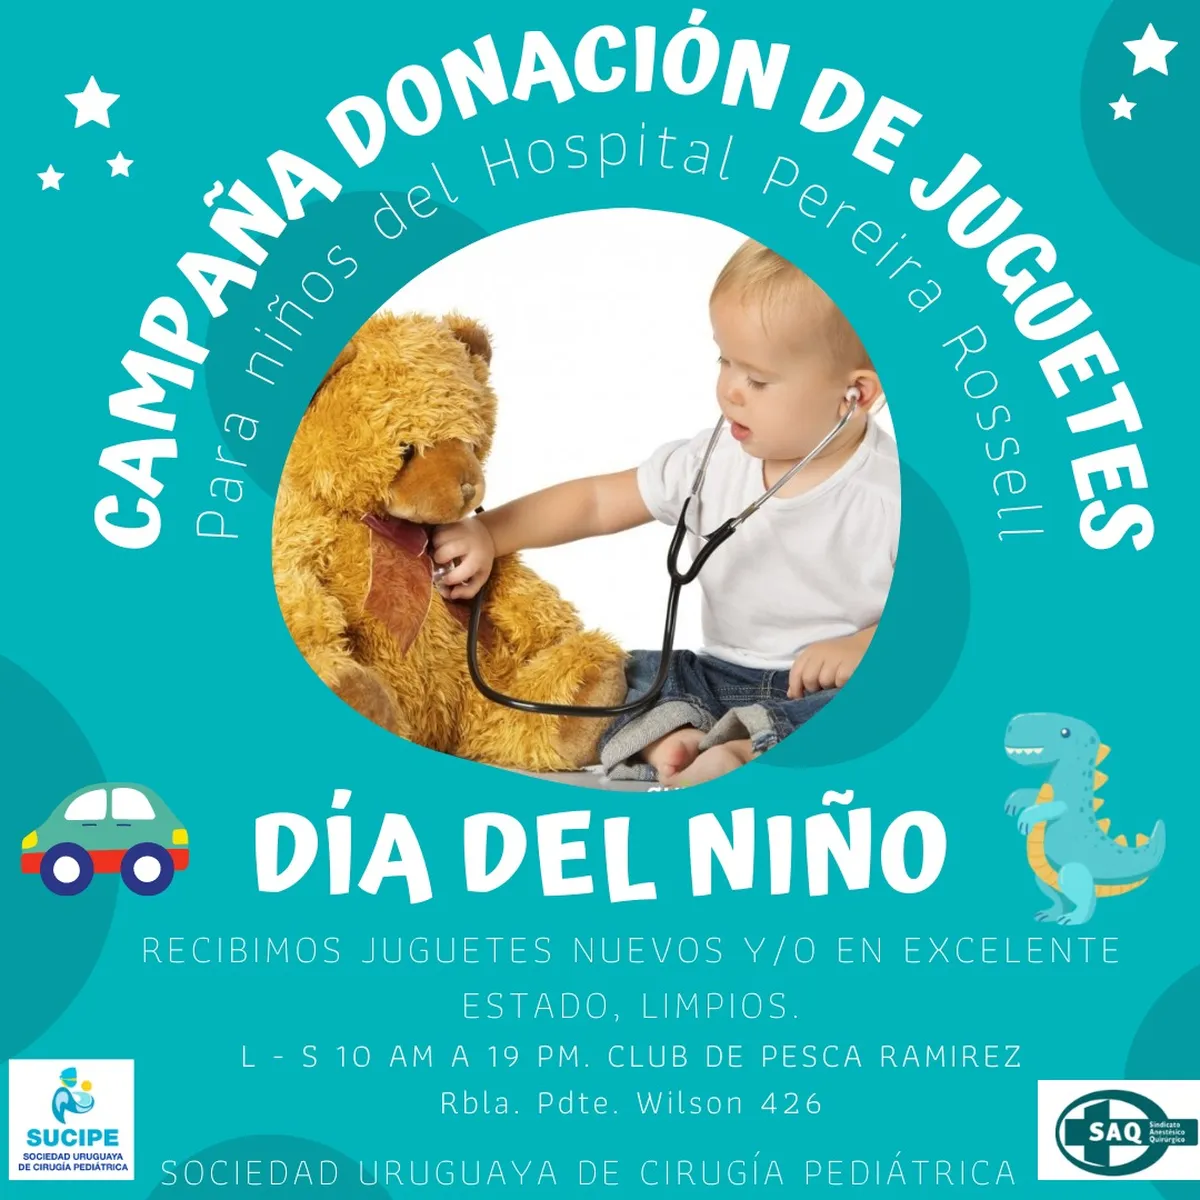 Sociedad de Cirugía Pediátrica inició campaña de donación de jueguetes para pacientes internados en Pereira Rossell.